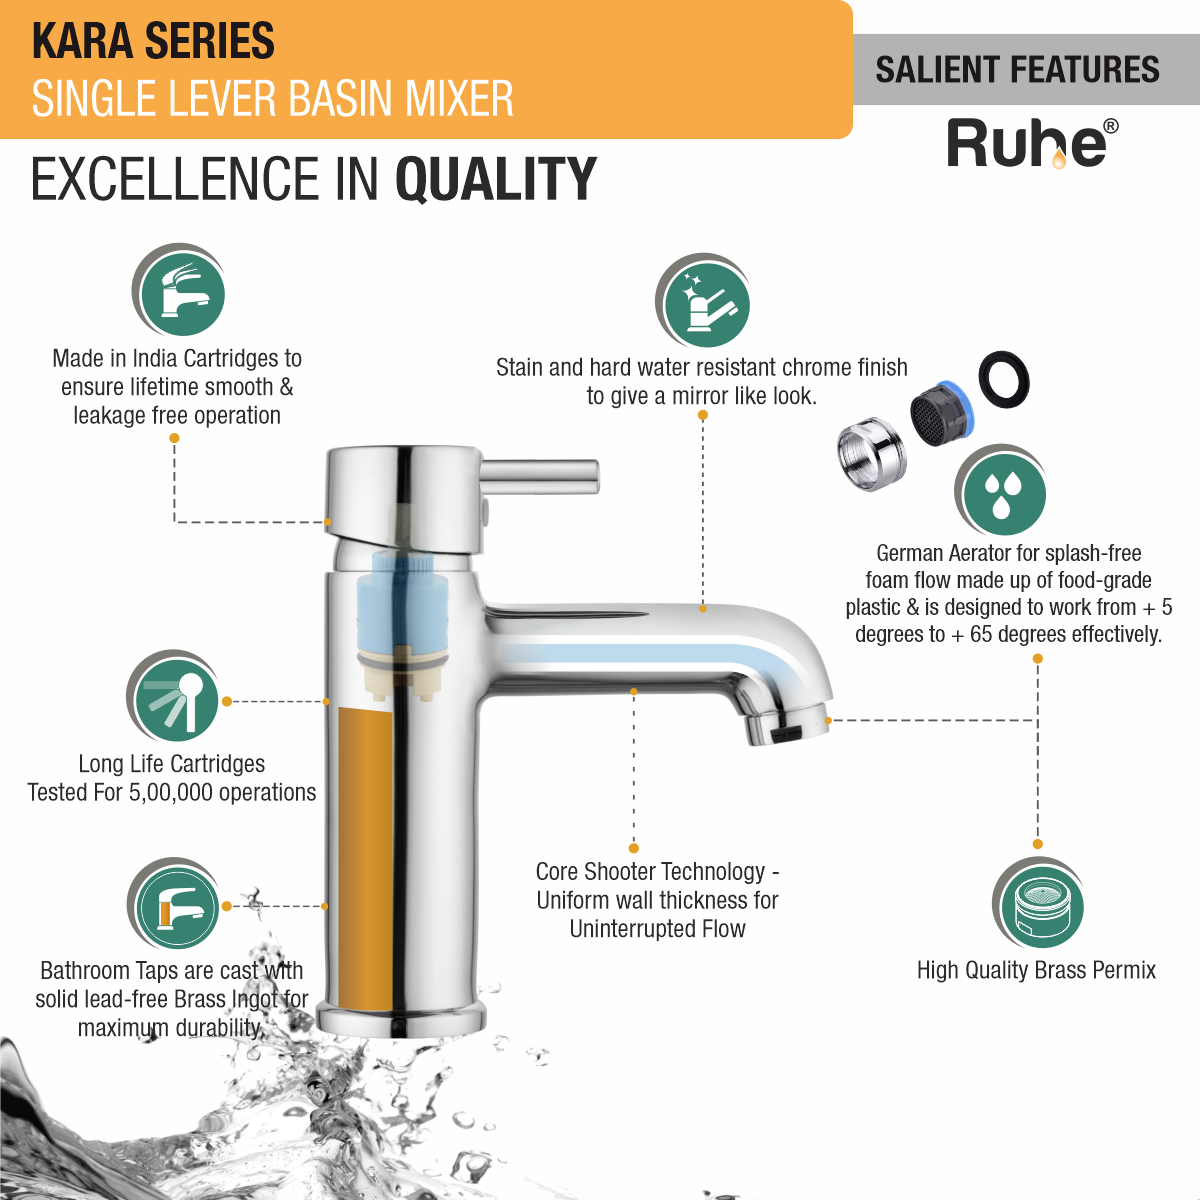 Kara Single Lever Basin Mixer Brass Faucet features and benefits